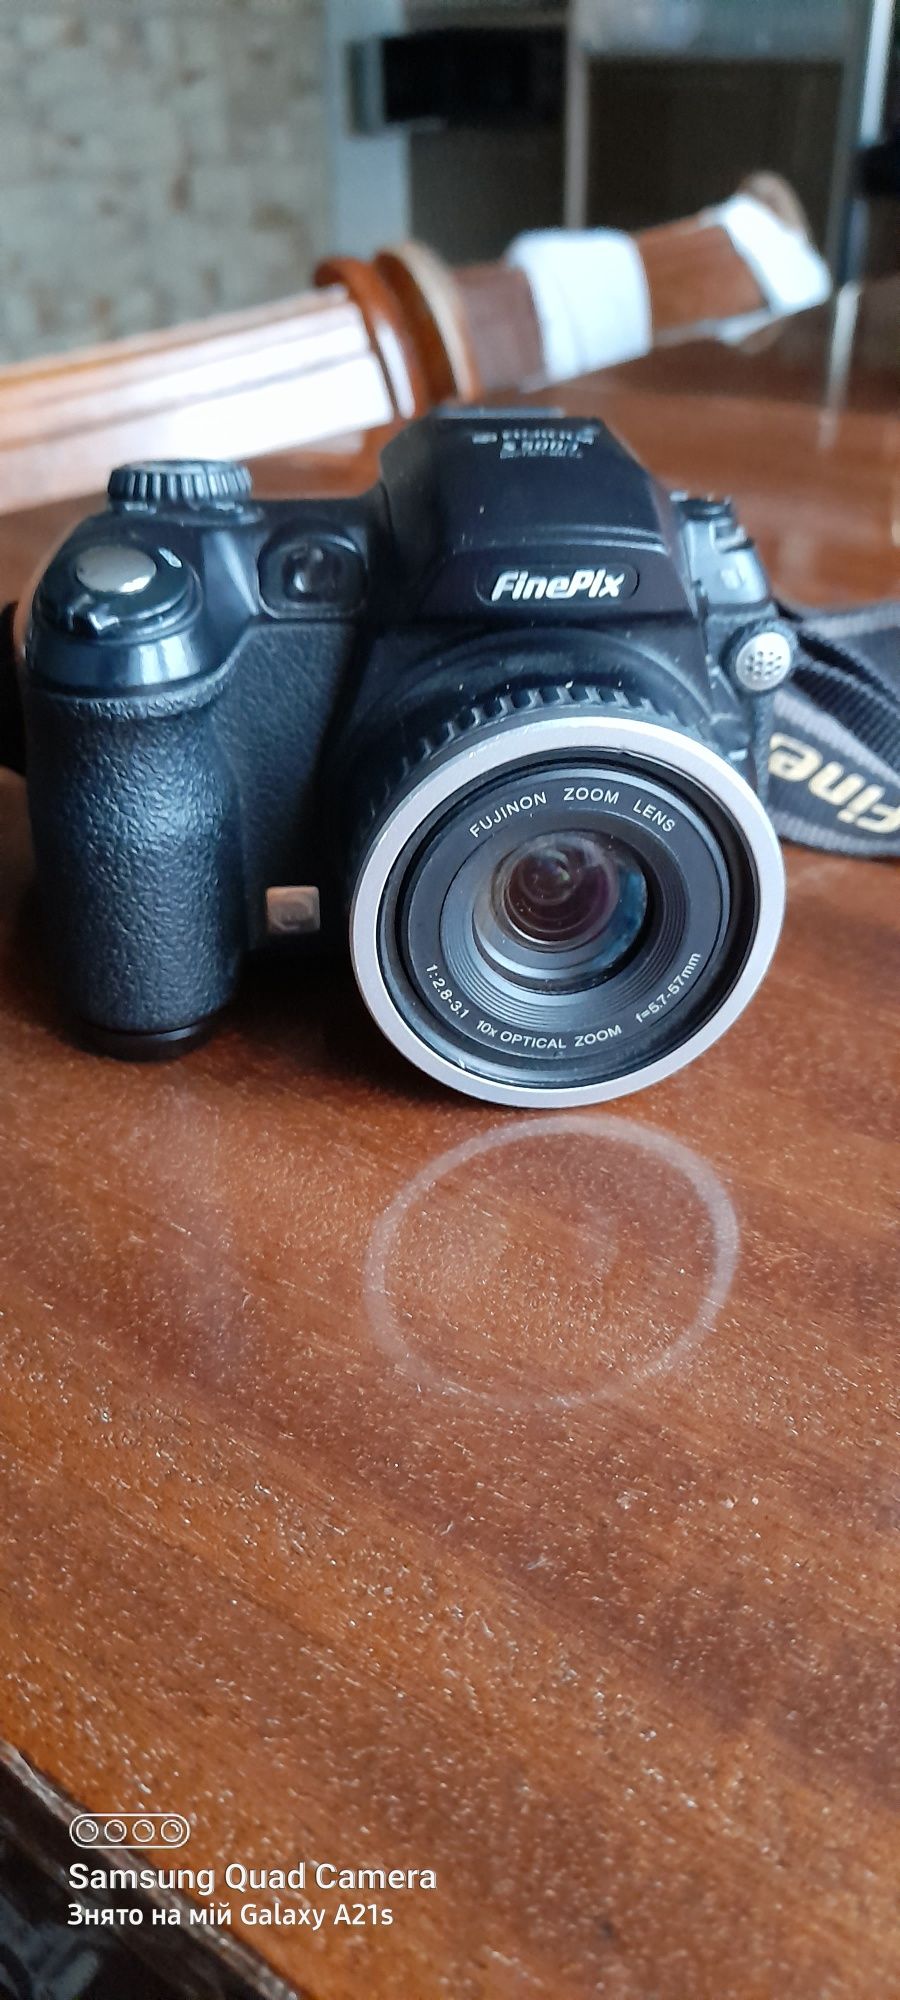 Фотоапарат FUJIFILM S5000 Fine Pix